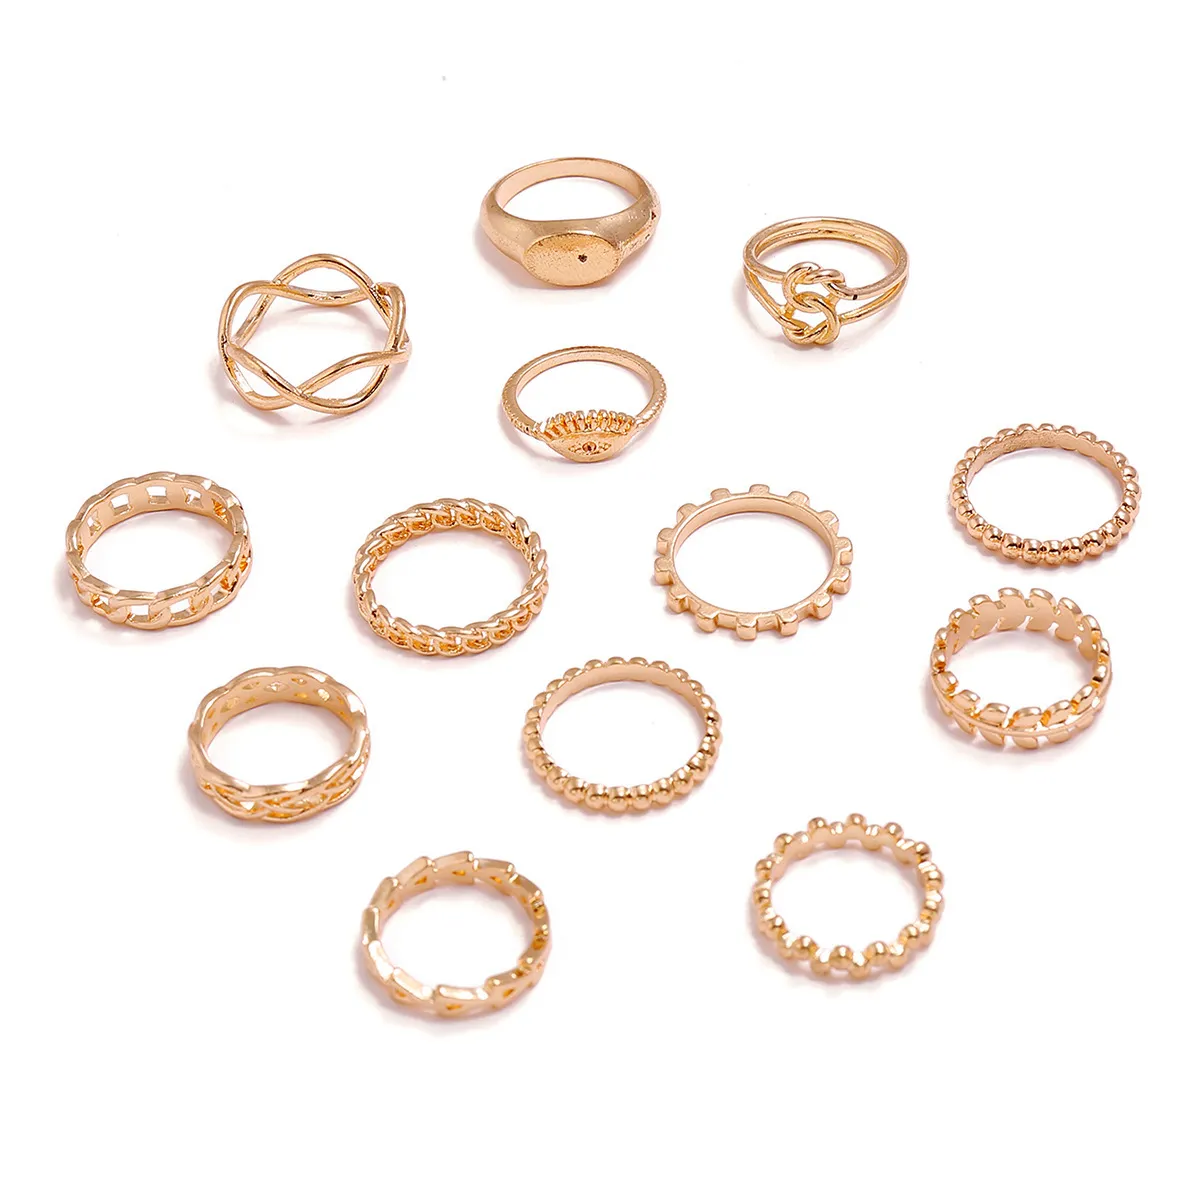 Conjuntos de anillos para mujer 13 unids/lote aro de moda personalidad geométrica tamaño libre Color dorado